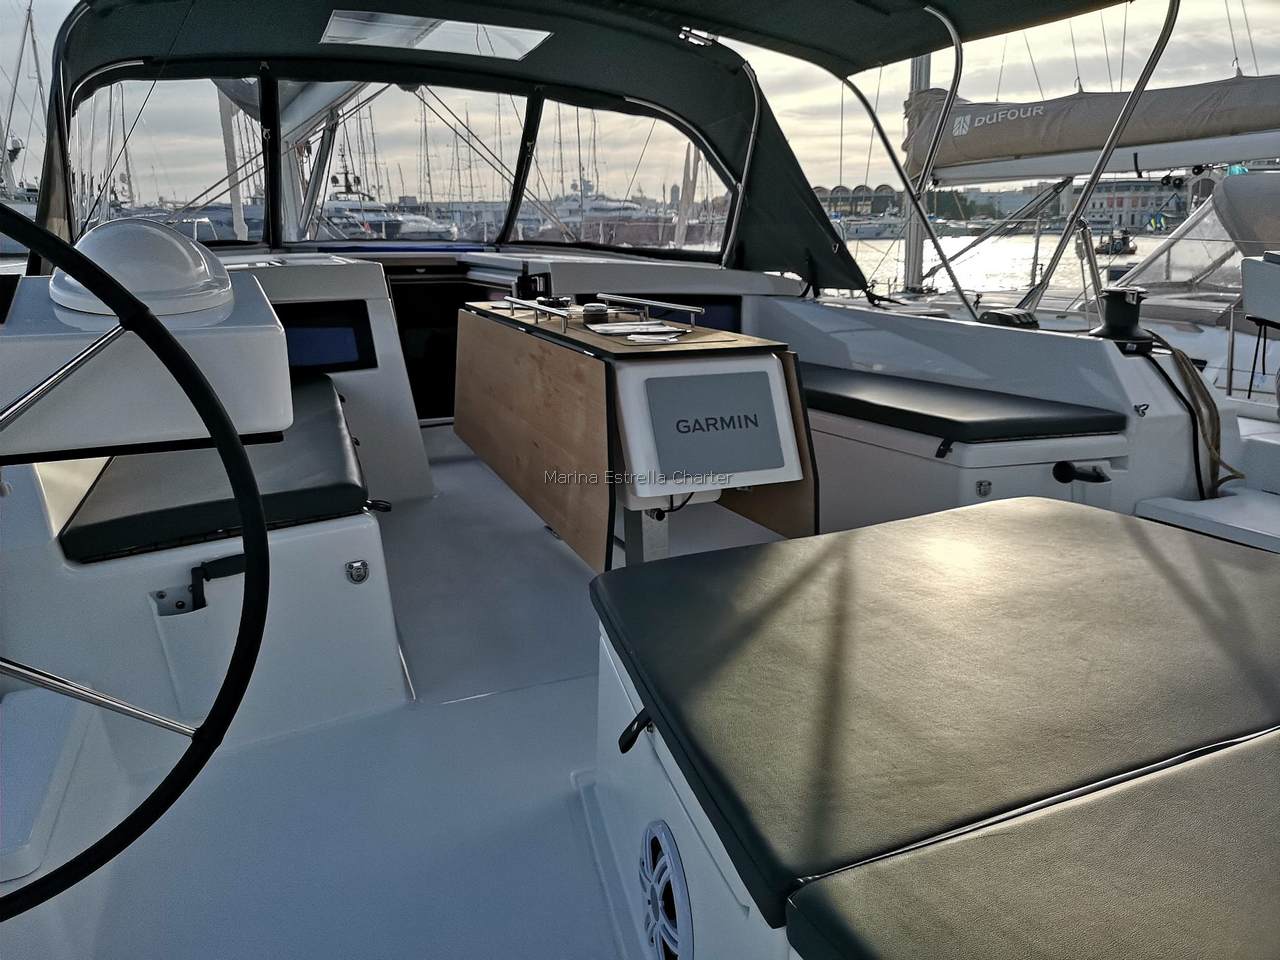 Barco de vela EN CHARTER, de la marca Dufour modelo 470 y del año 2021, disponible en Marina de Denia Denia Alicante España